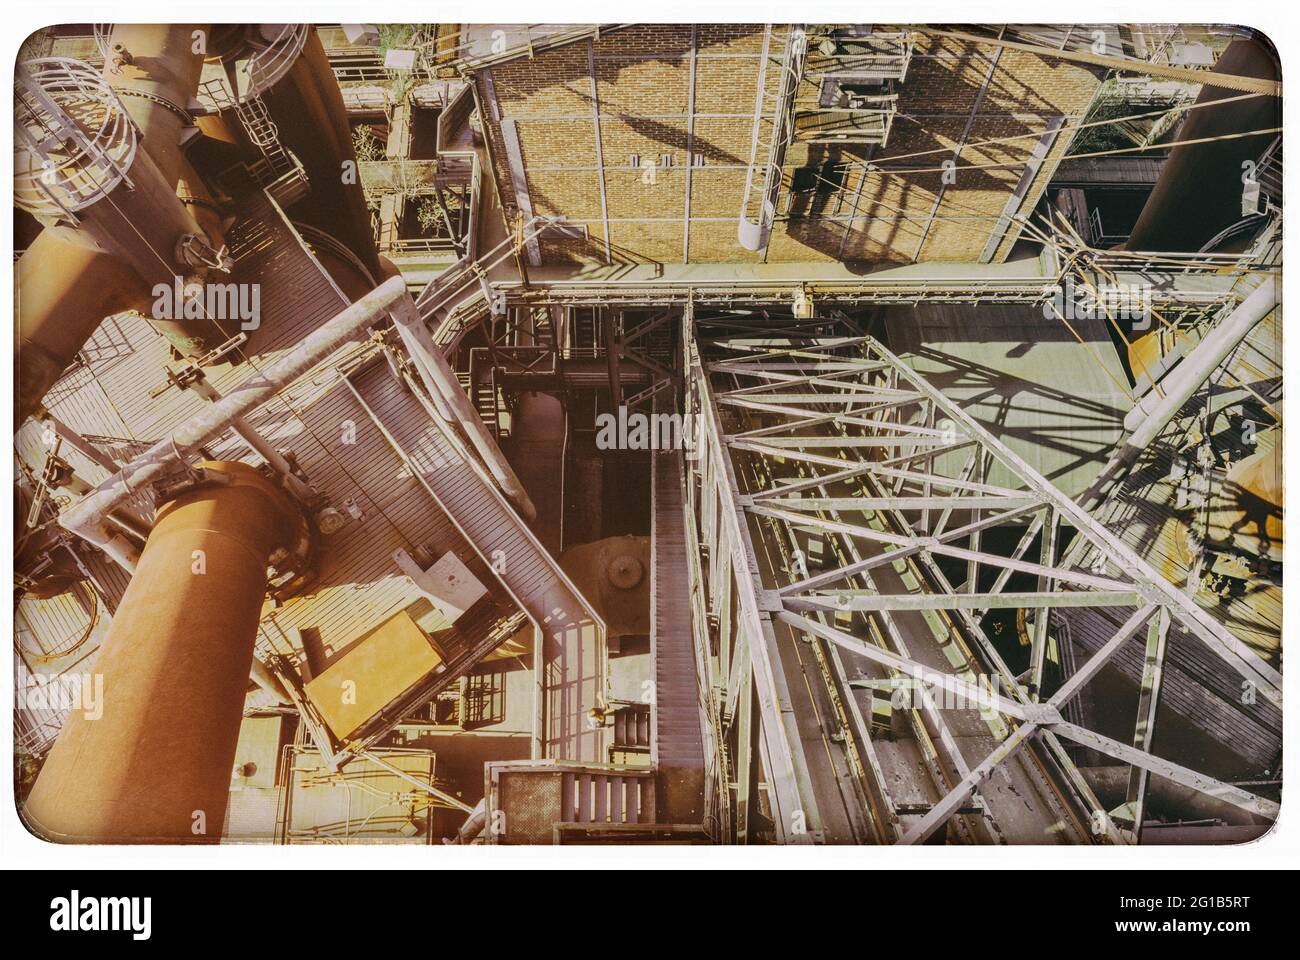 Zeche Zollverein und Landschaftspark Duisburg Nord fotografiert aus der Vogelperspektive. Stahlgerüst, abgelichtet al Monster aus Eisen und Stahl. Foto de stock